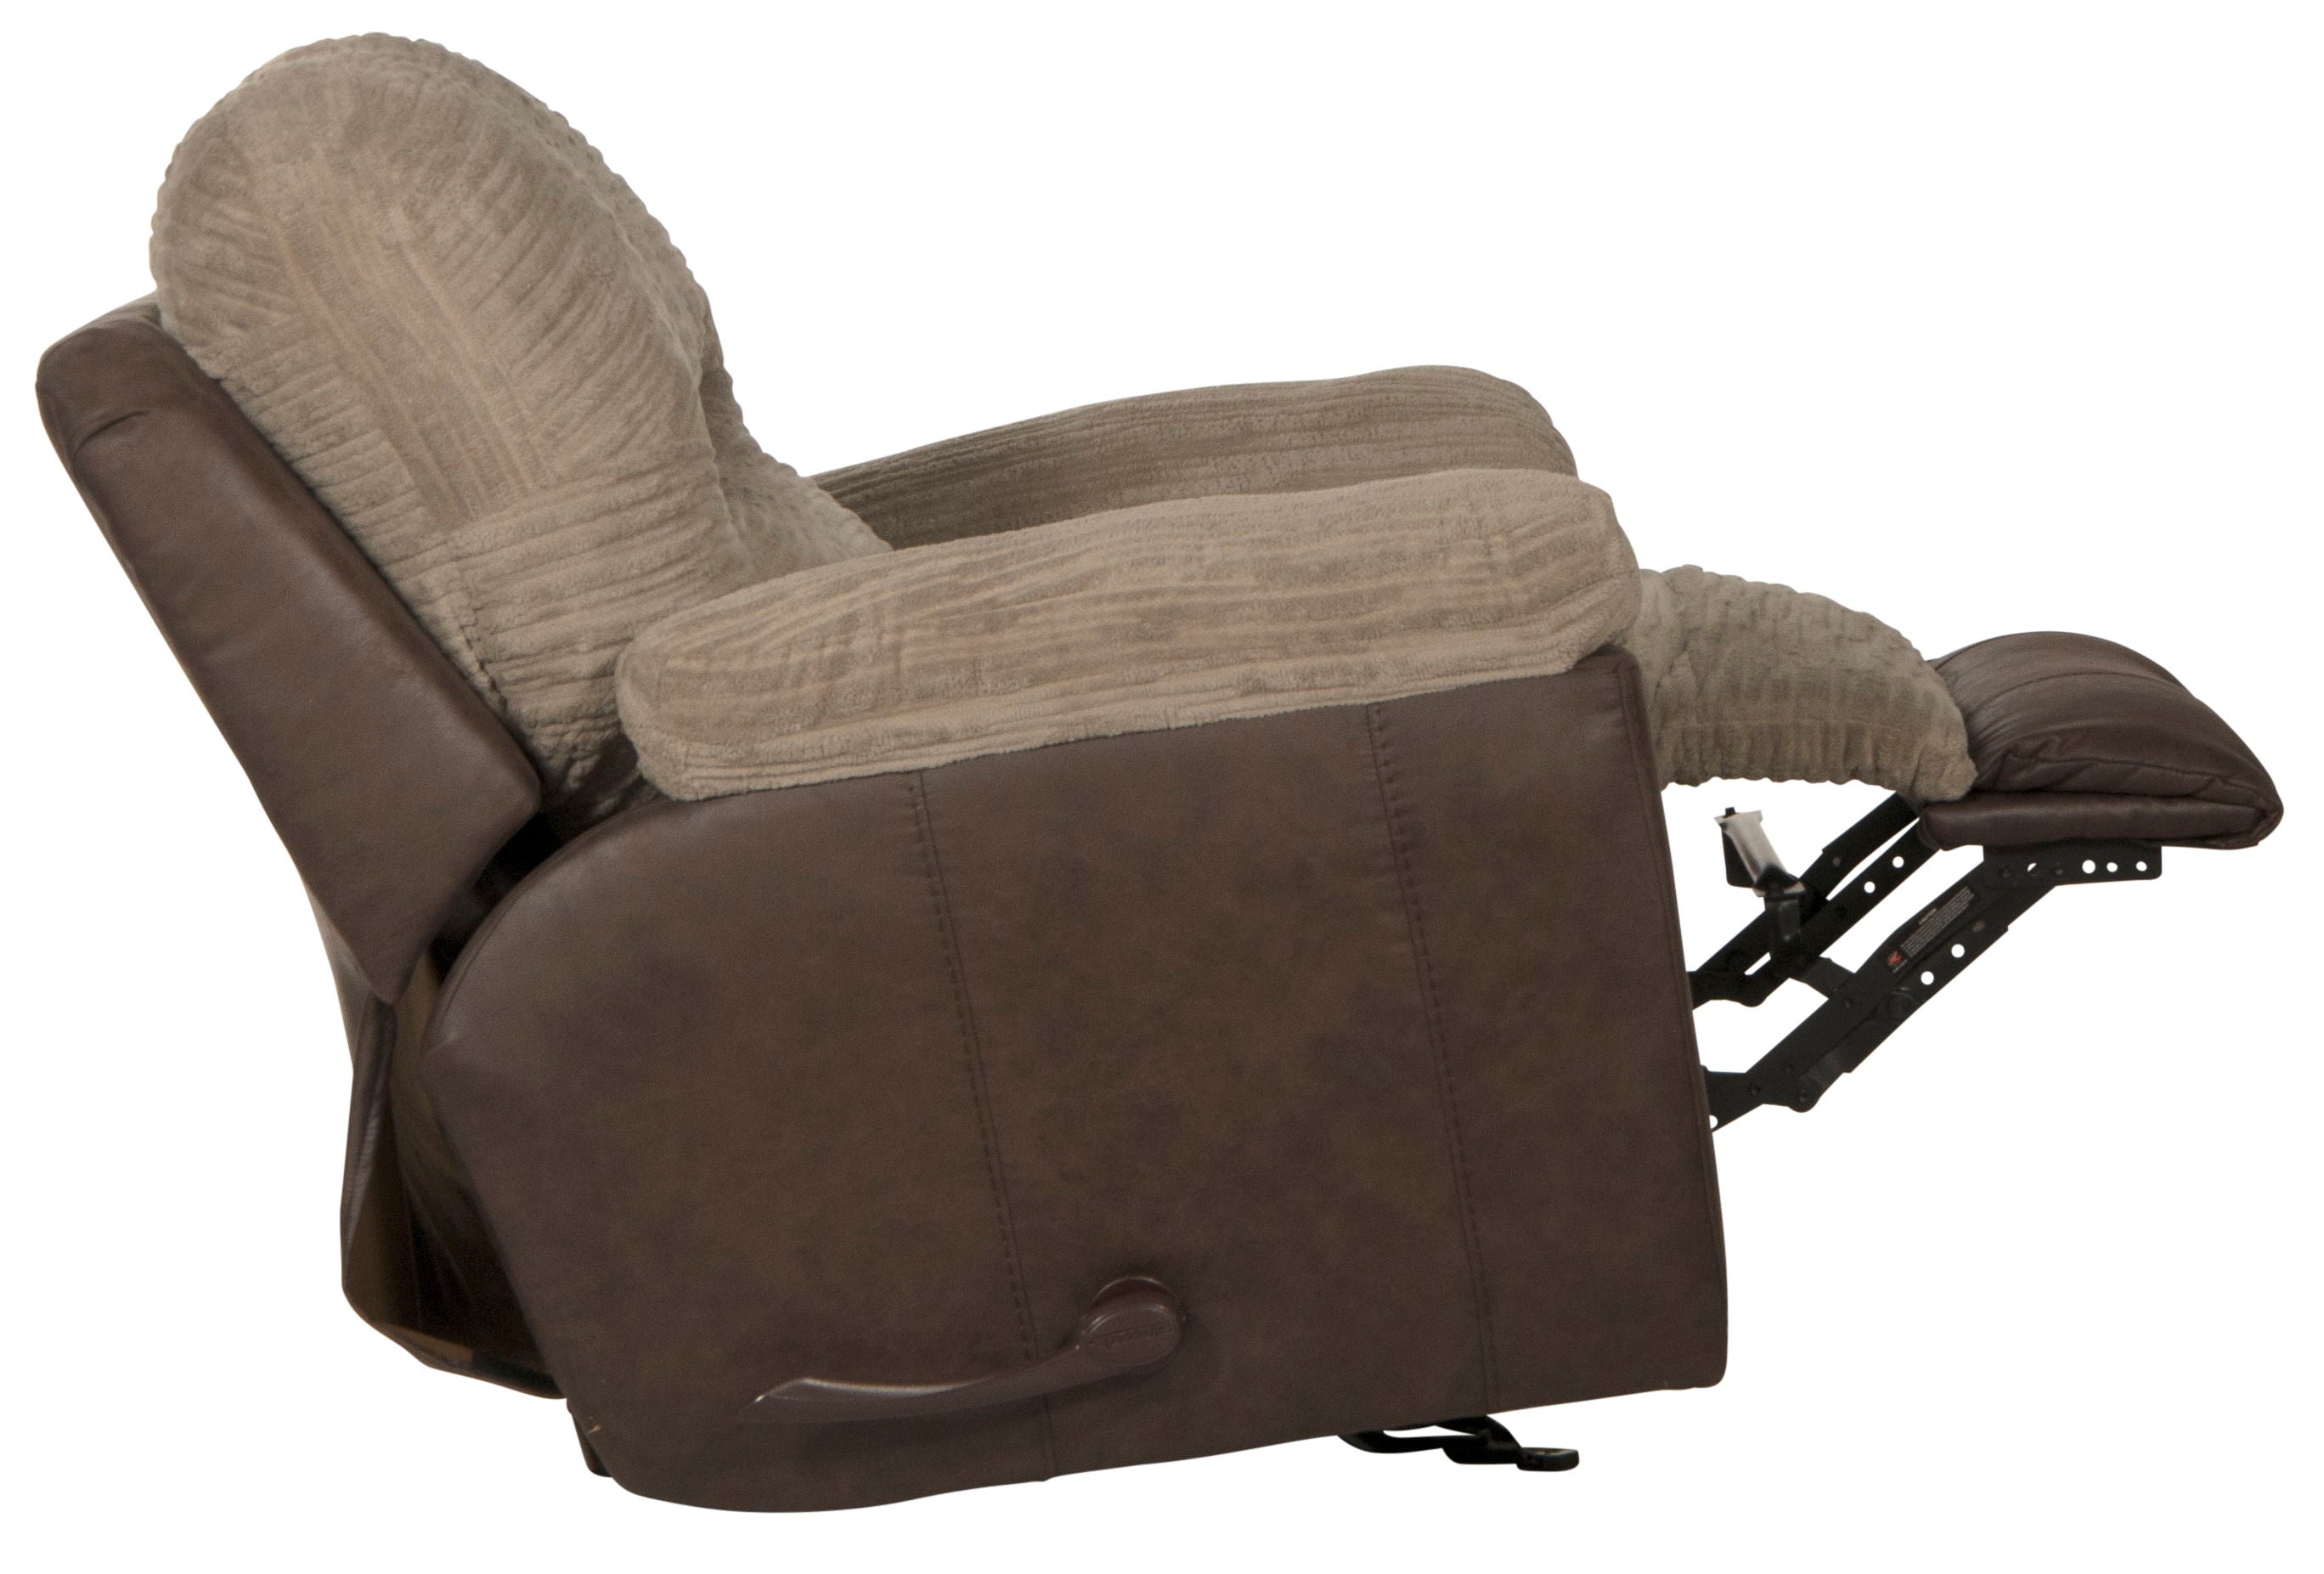 McMahon - Glider Recliner - Bark - 5th Avenue Furniture